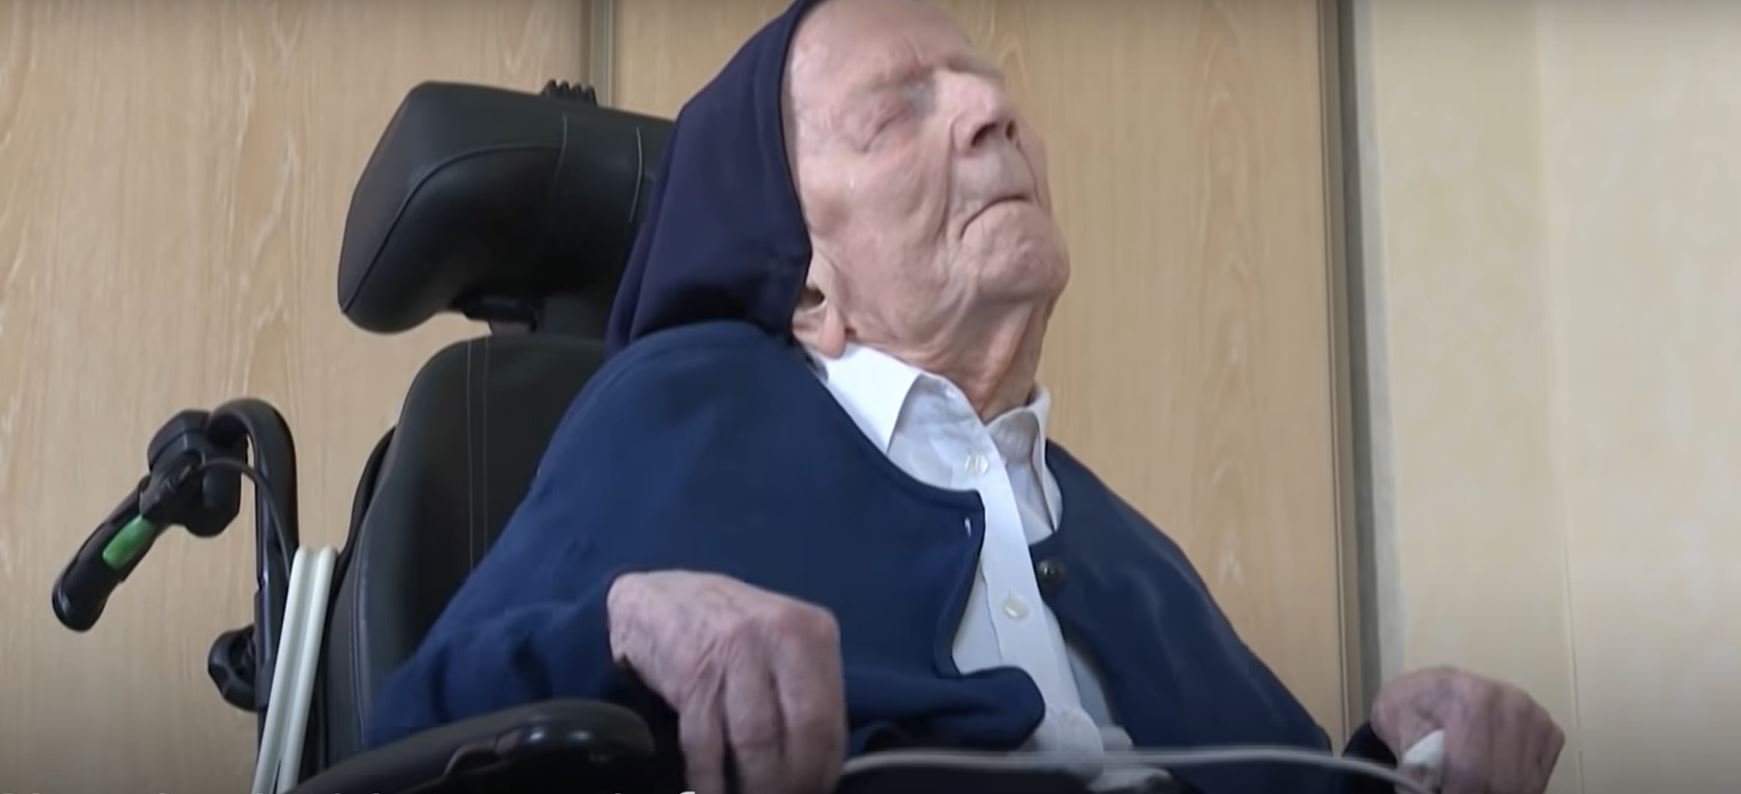 118 éves korában meghalt a világ legidősebb embere, aki túlélt két világháborút és a Covidot is